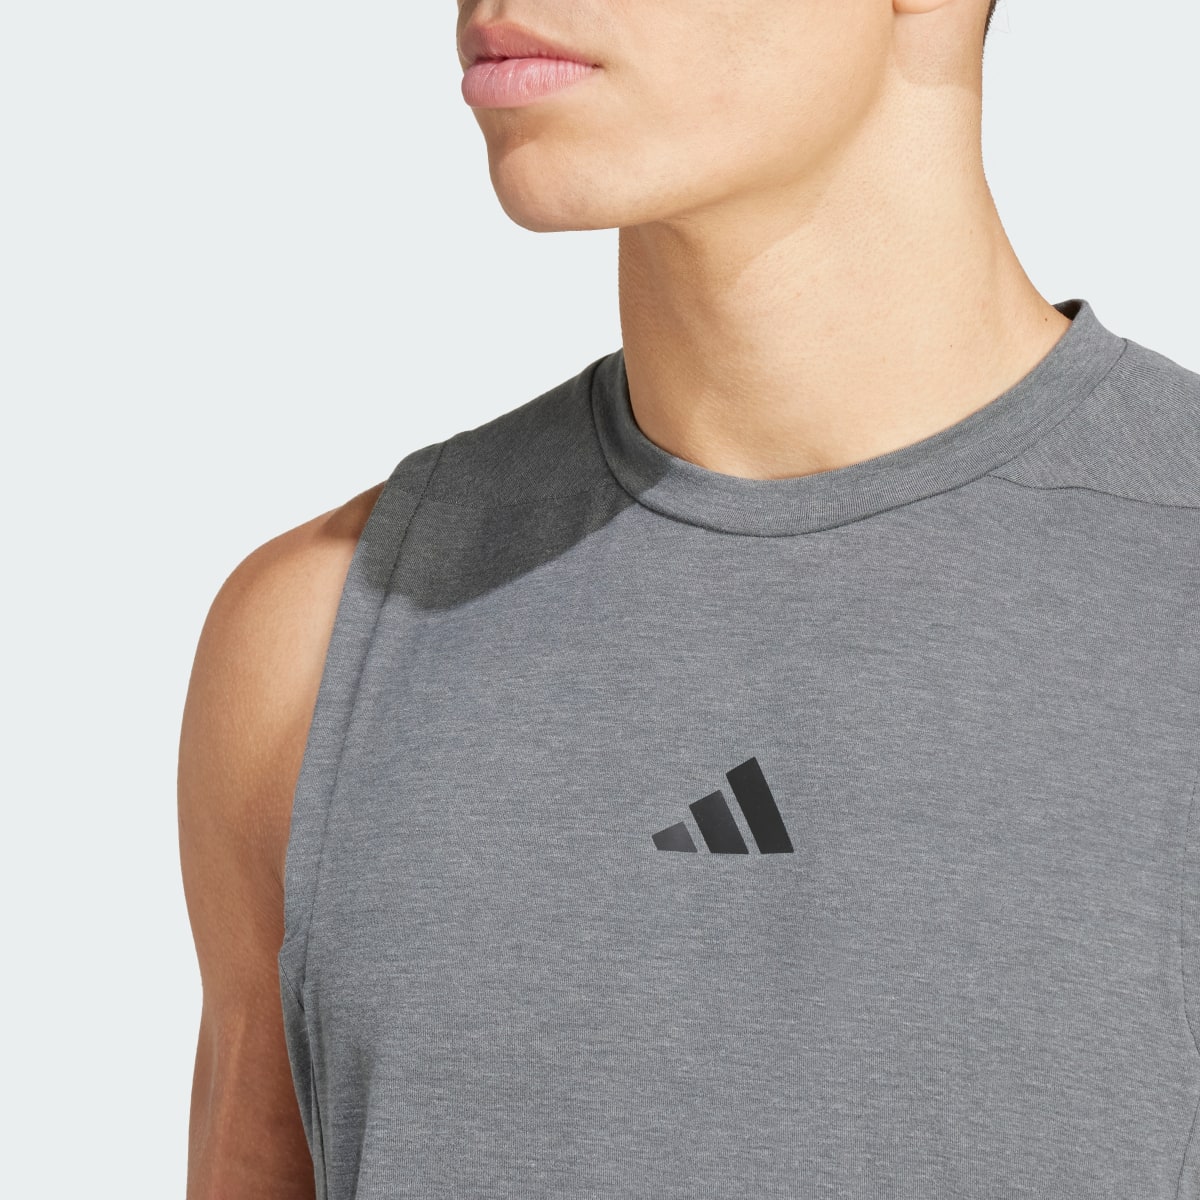 Adidas Camiseta sin mangas Designed for Training Workout. 6